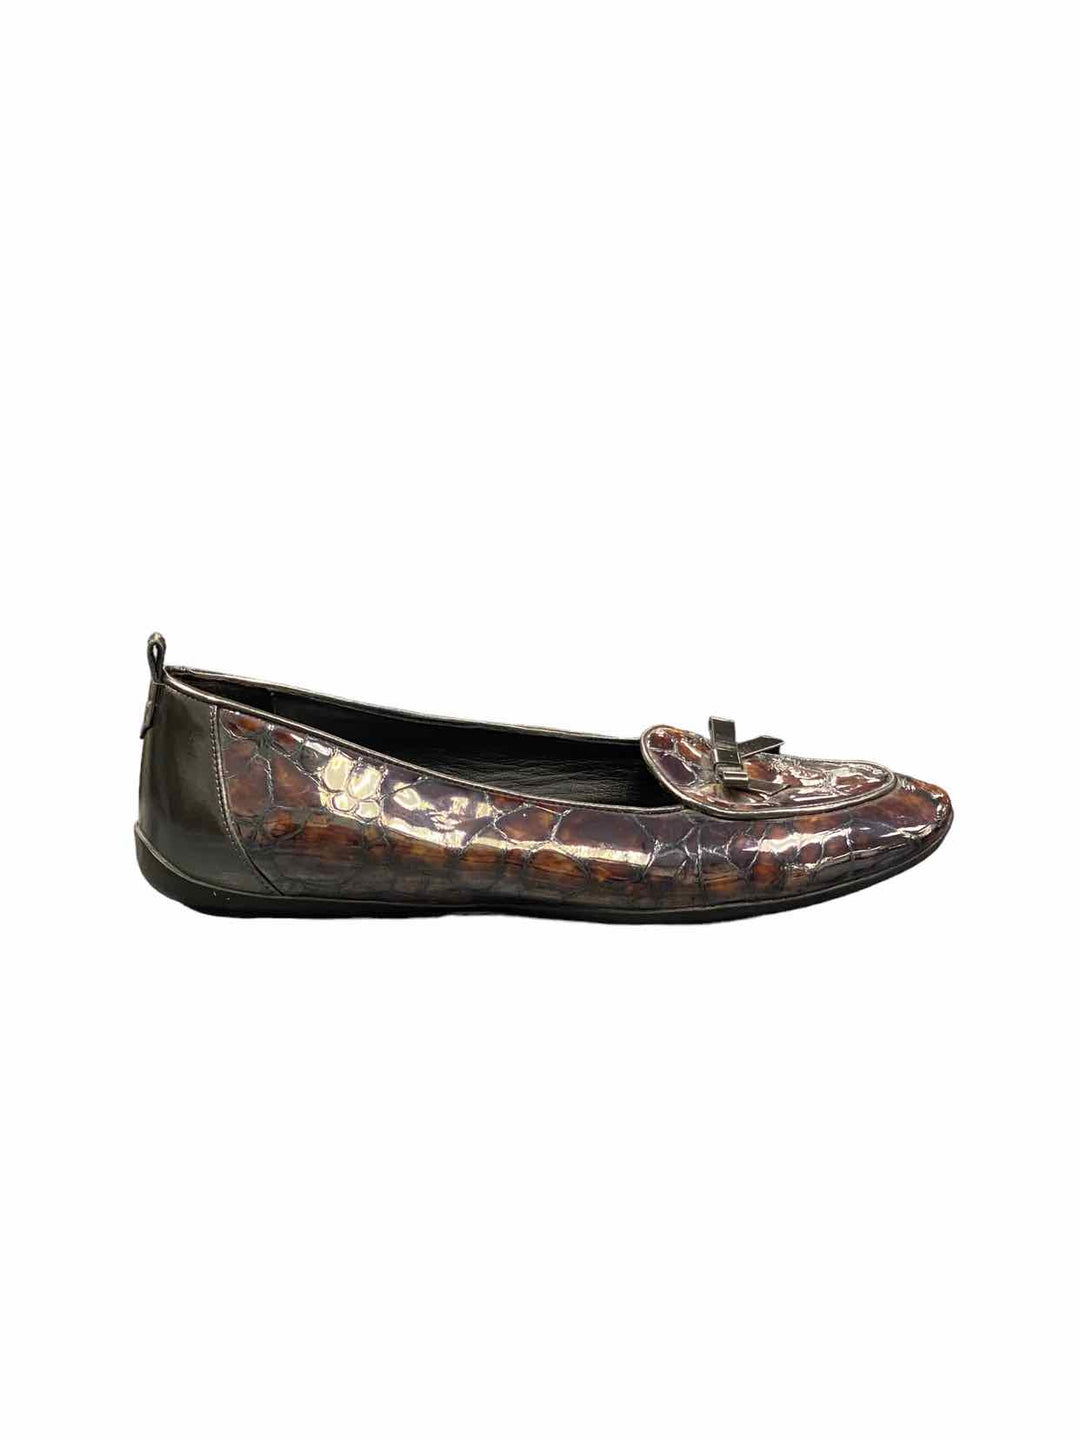 Donald Pliner Shoe Size 8 Leather Flats